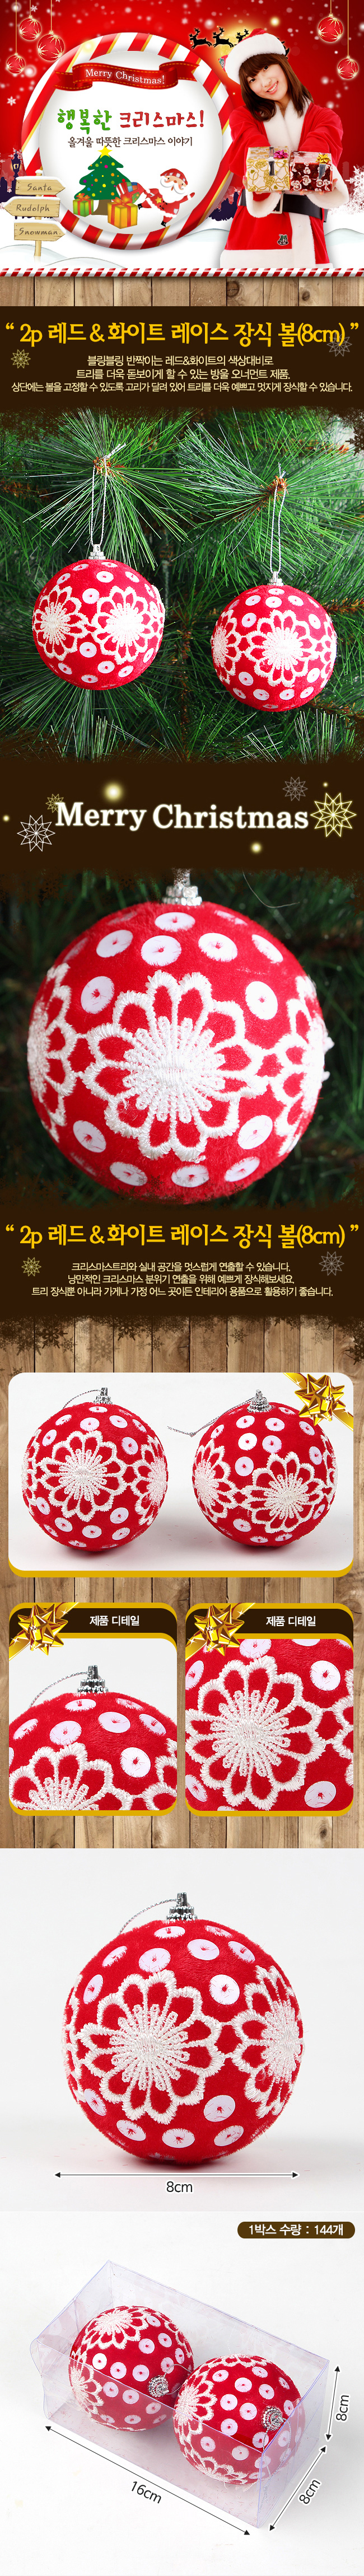 2p 크리스마스 레이스 장식볼(8cm)/트리장식 트리볼